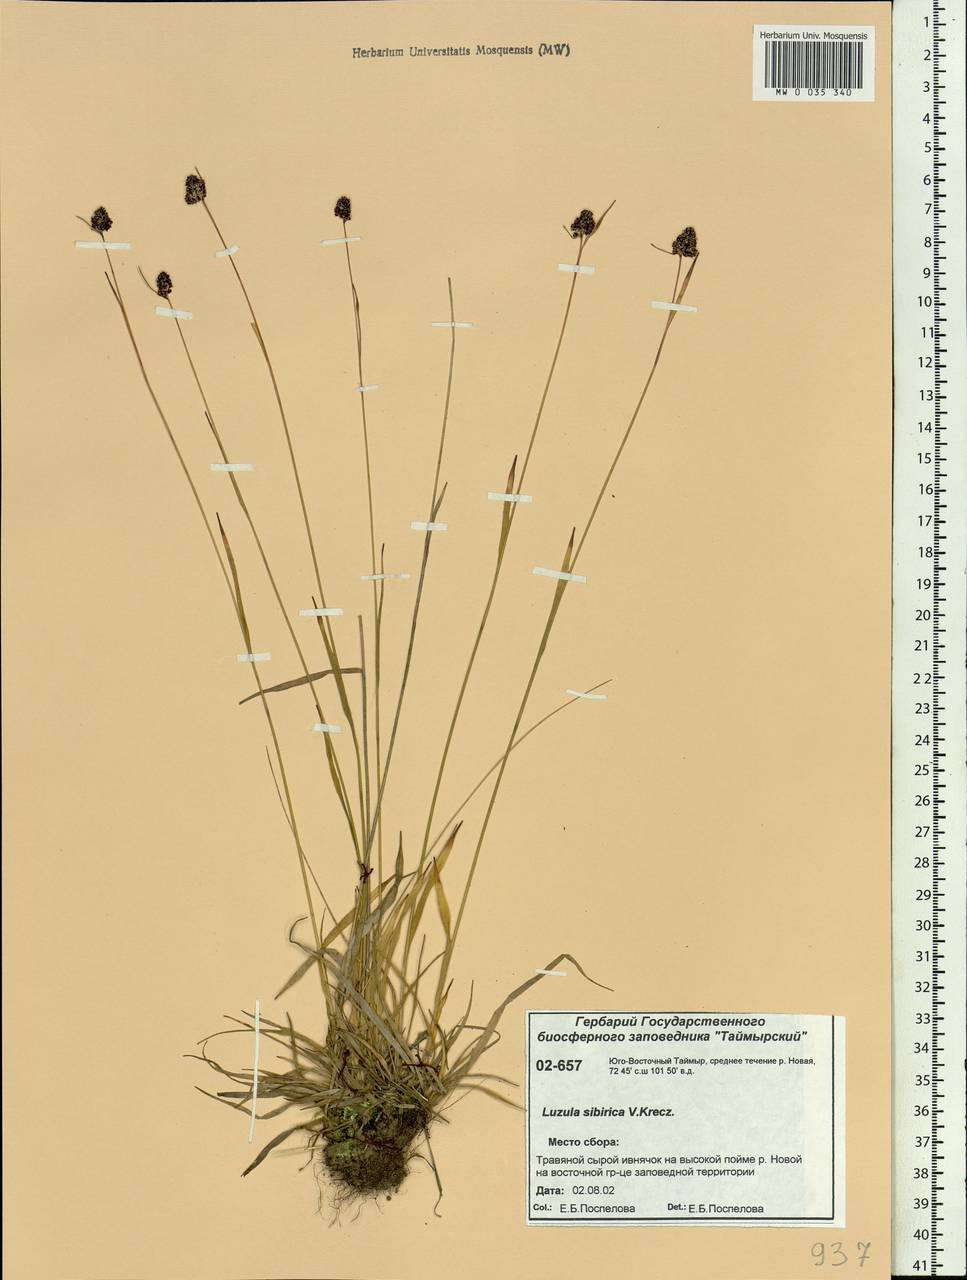 Luzula multiflora subsp. sibirica V. I. Krecz., Siberia, Central Siberia (S3) (Russia)